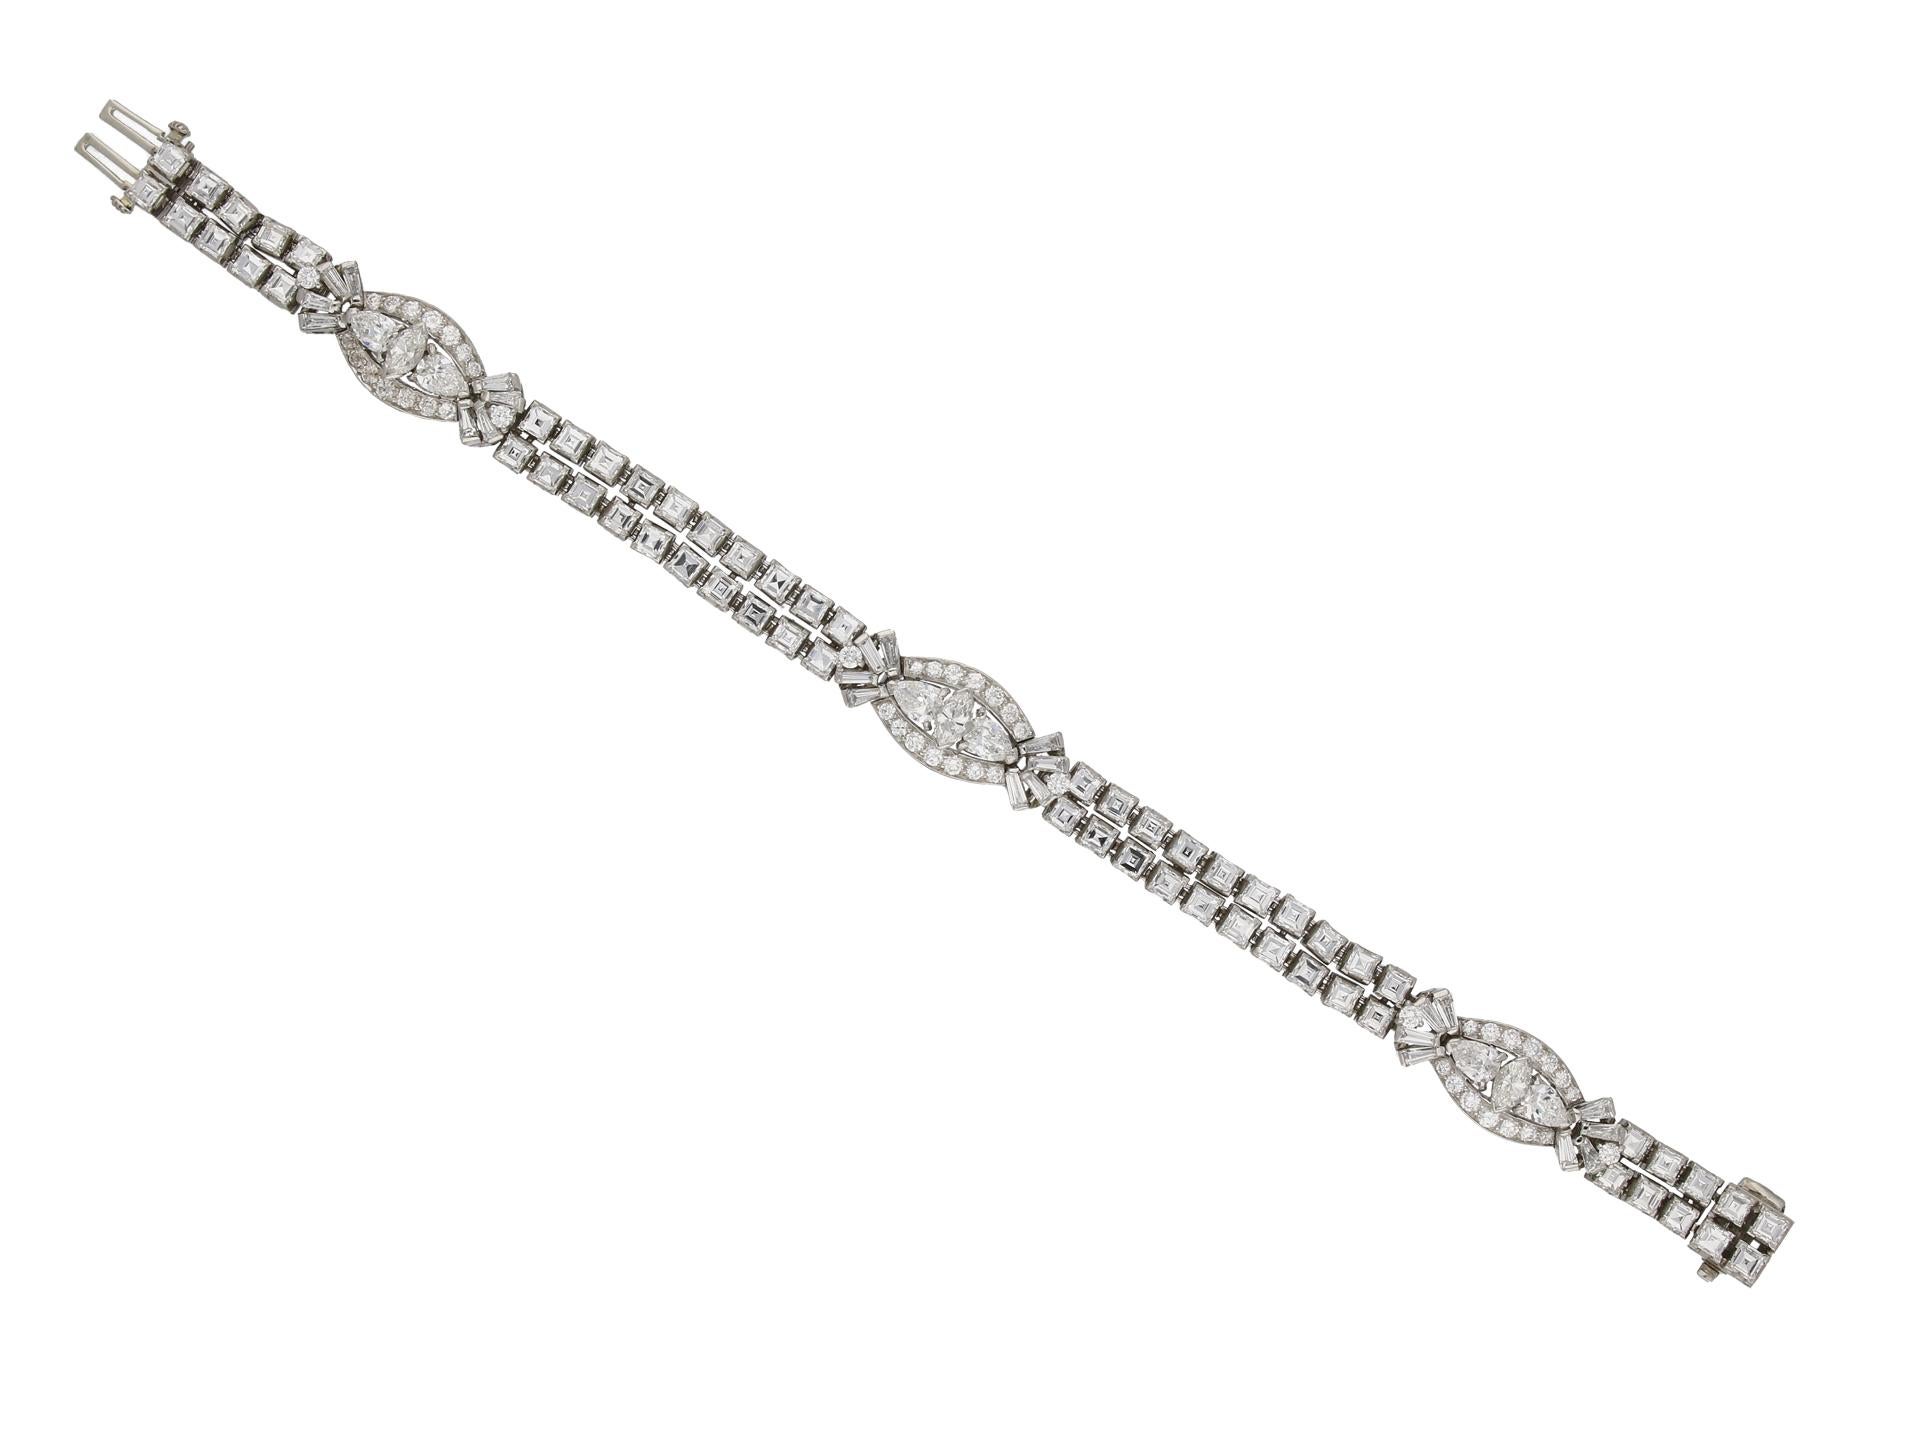 Diamantarmband von Oscar Heyman Brothers. Ein gegliedertes zweireihiges Armband, besetzt mit drei Motiven aus einem vertikal gefassten marquiseförmigen Brillanten in einer offenen Krallenfassung, alle drei mit einem Gesamtgewicht von 0,75 Karat,